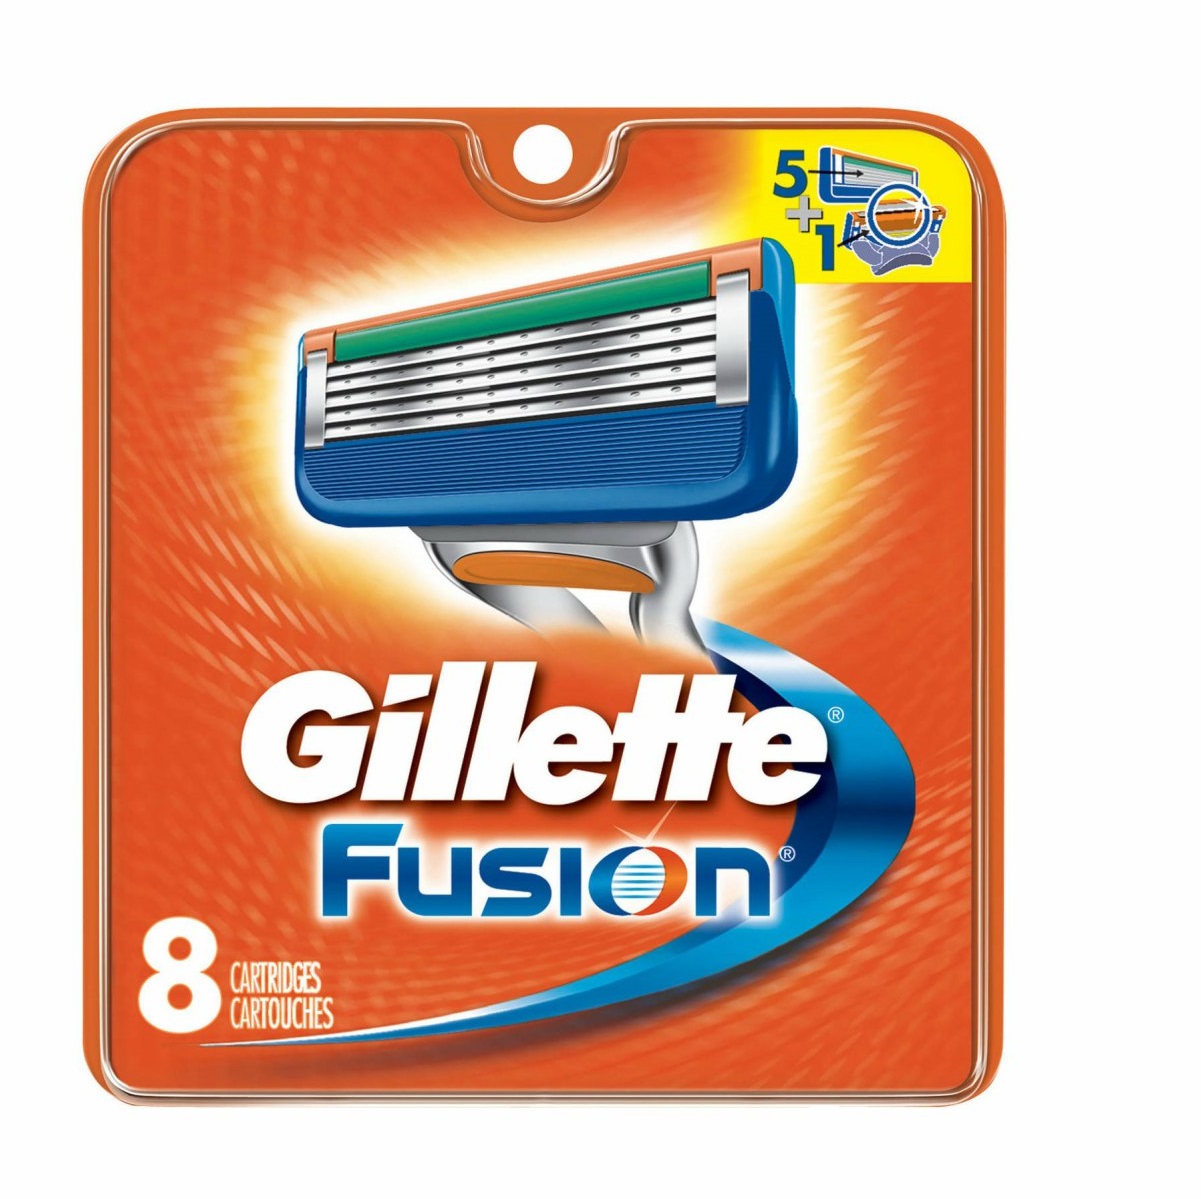 Сменные кассеты для станка Gillette Fusion 8шт сменные кассеты для станка gillette fusion proglide 8 шт gil 84854229